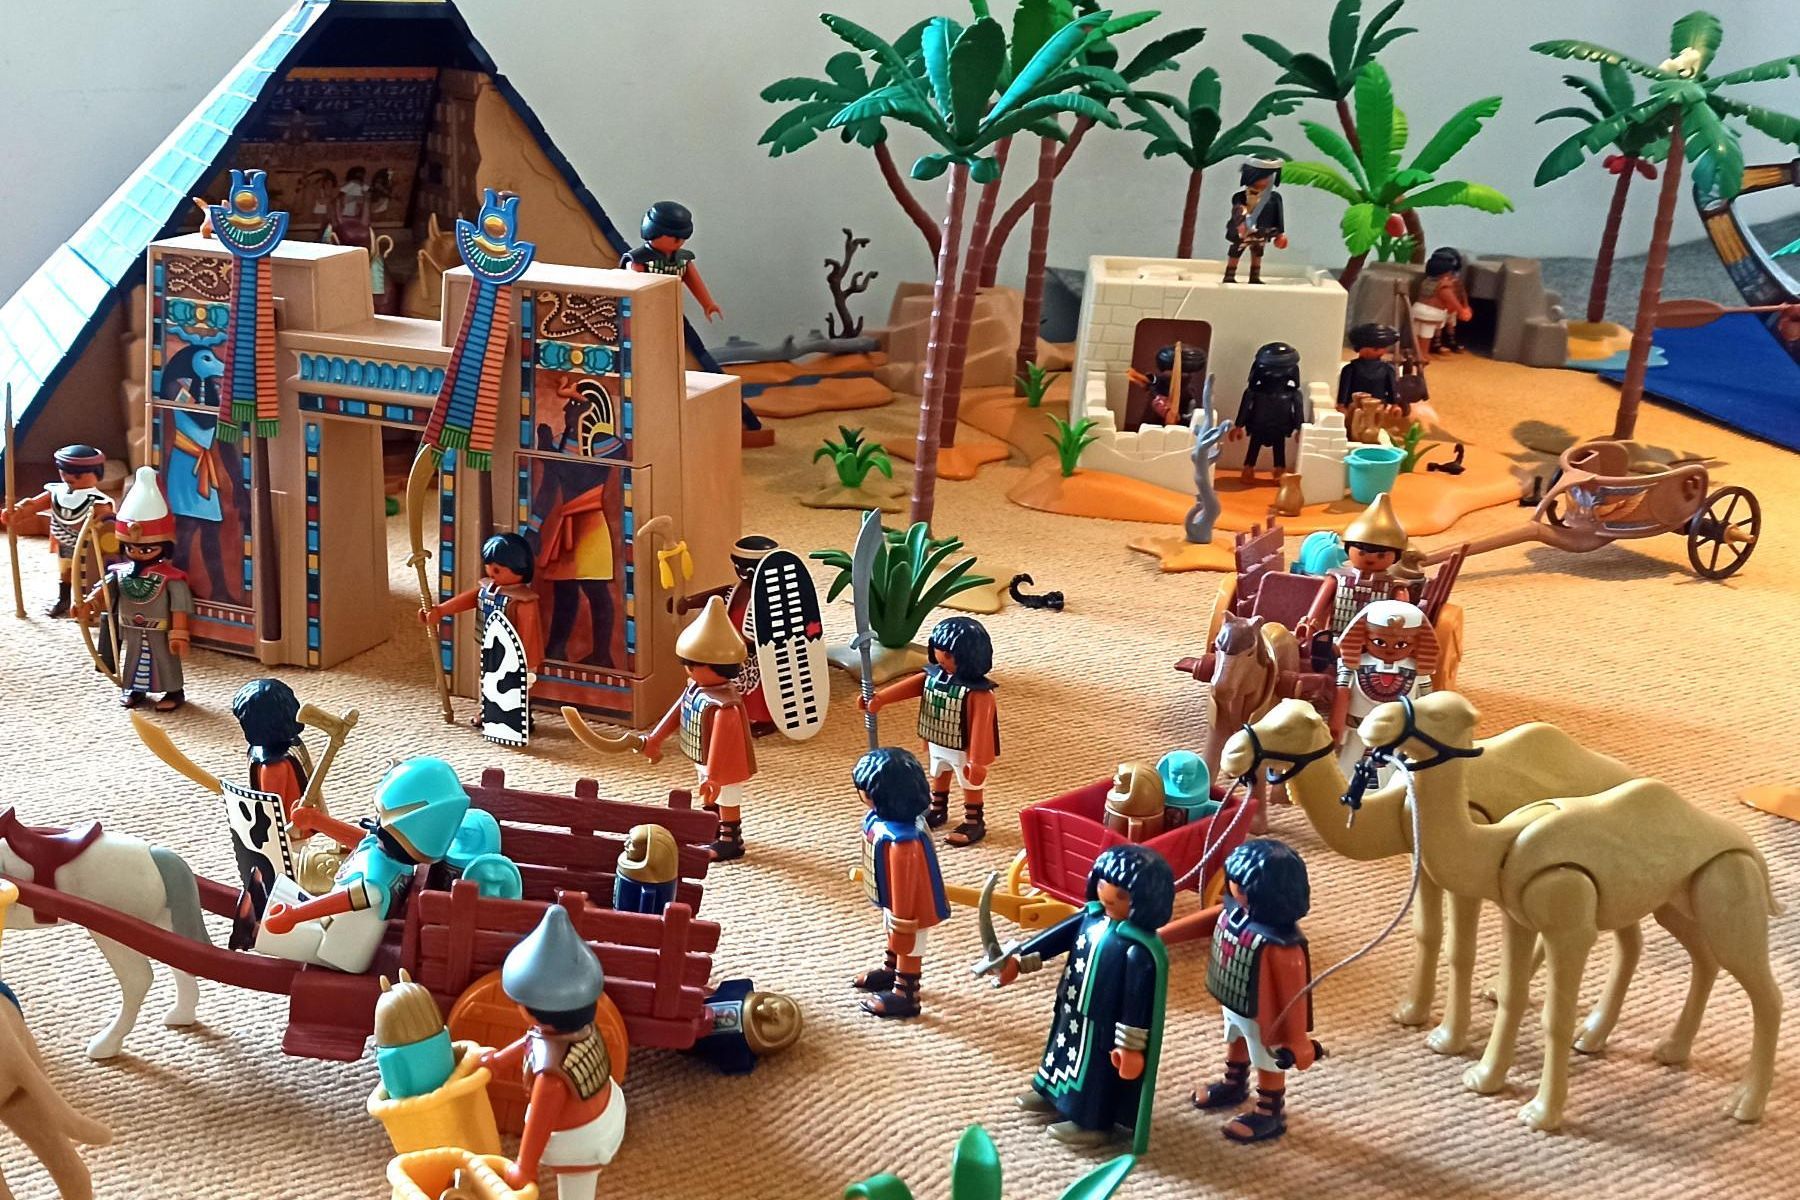 Schloss Heidelberg, Event, Playmobil-Ausstellung, Ägypten